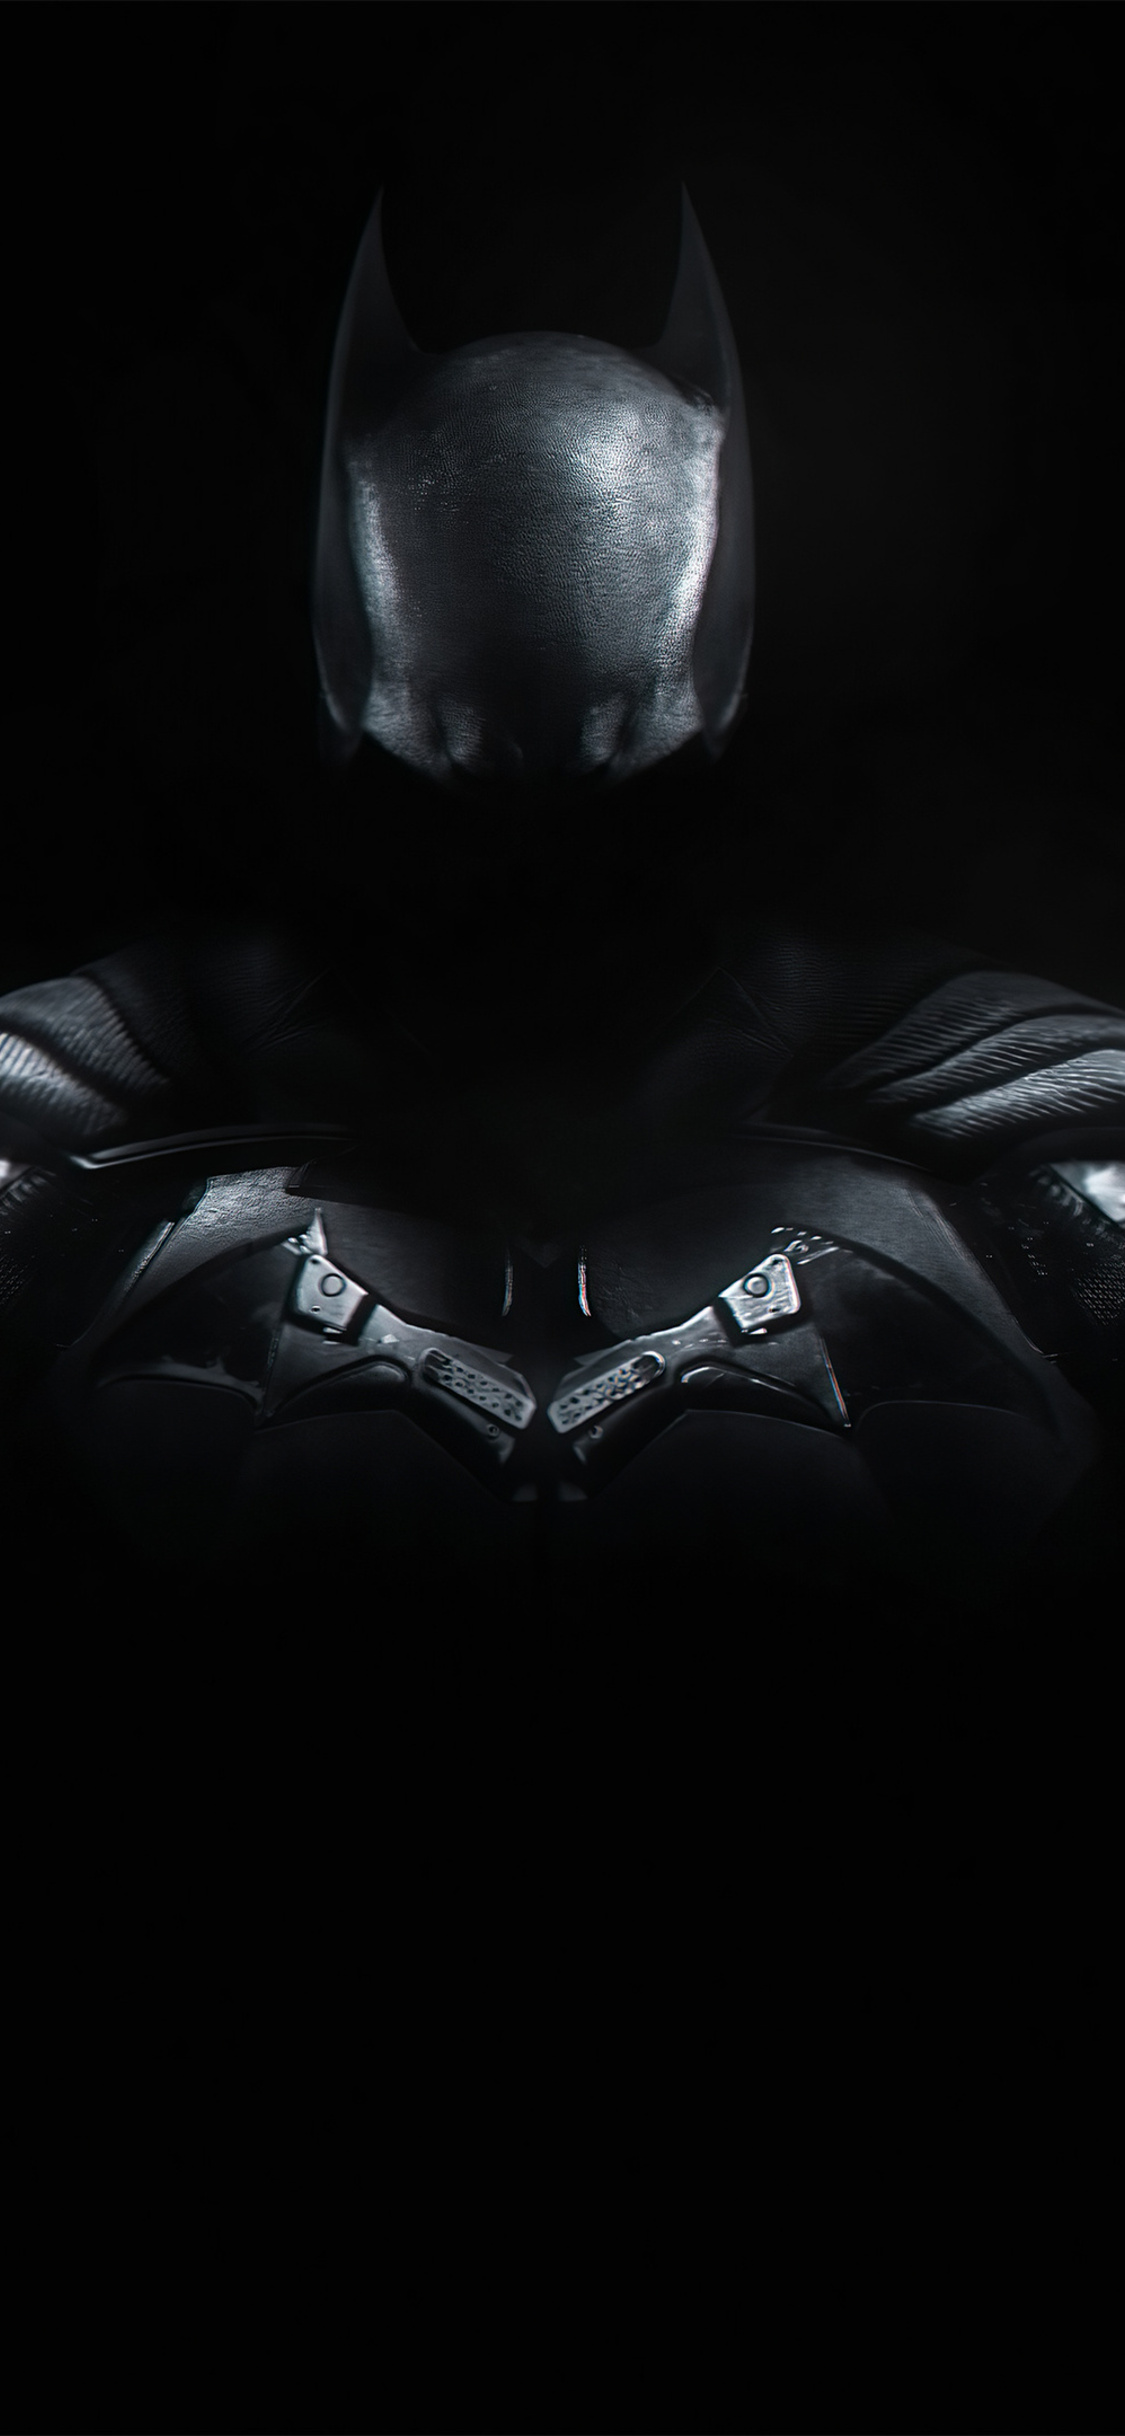 Chào mừng bạn đến với hình ảnh mới về Batman - siêu anh hùng huyền thoại của Gotham City. Tựa như \